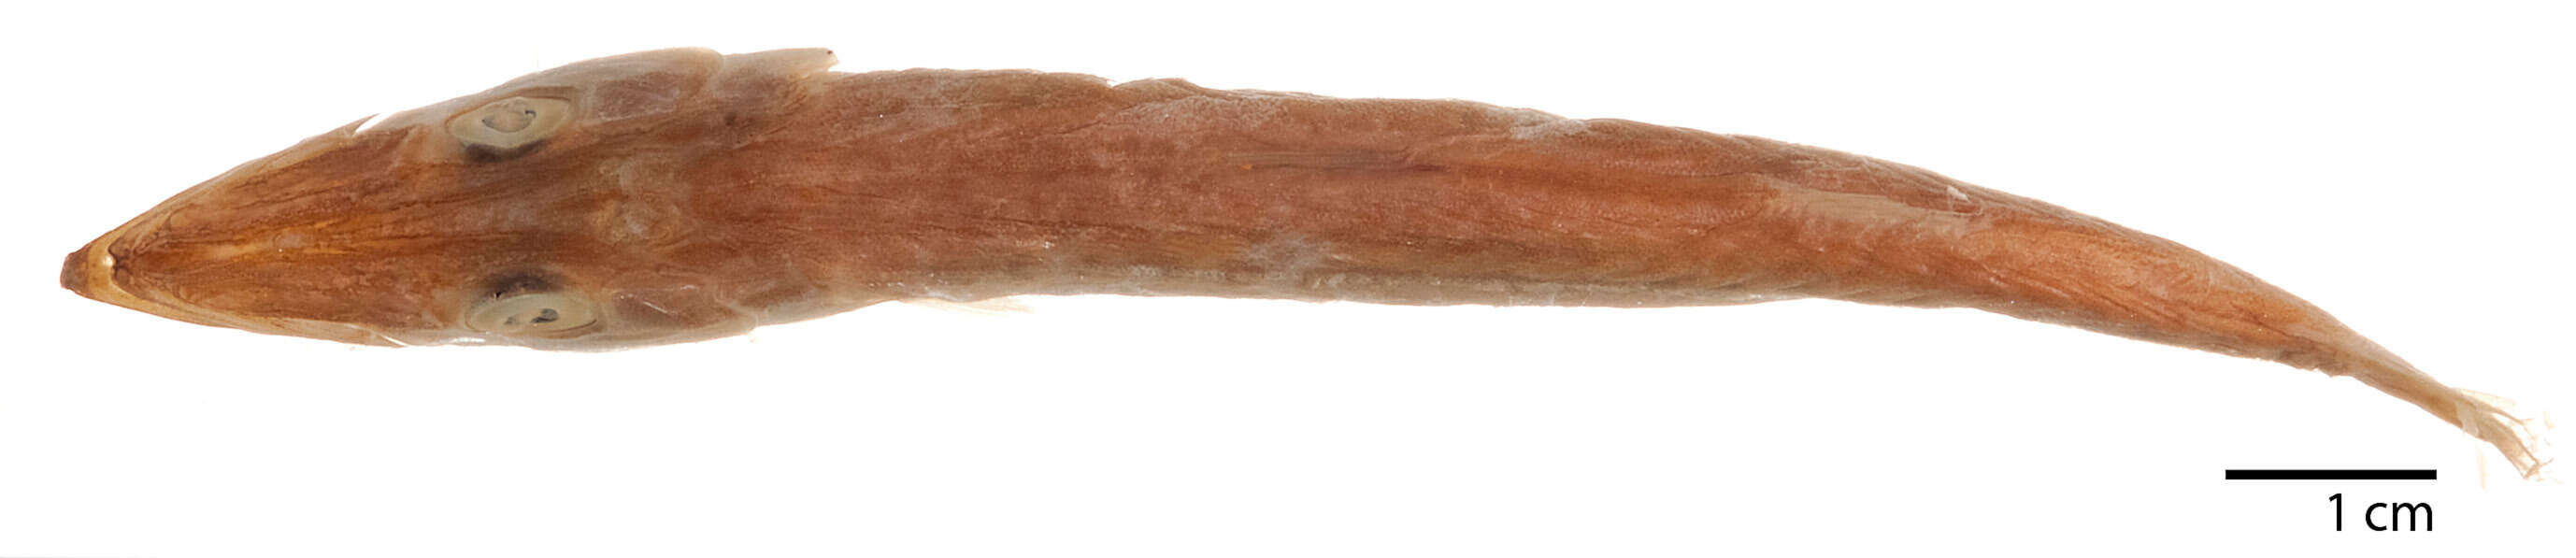 Image of Cortez barracuda